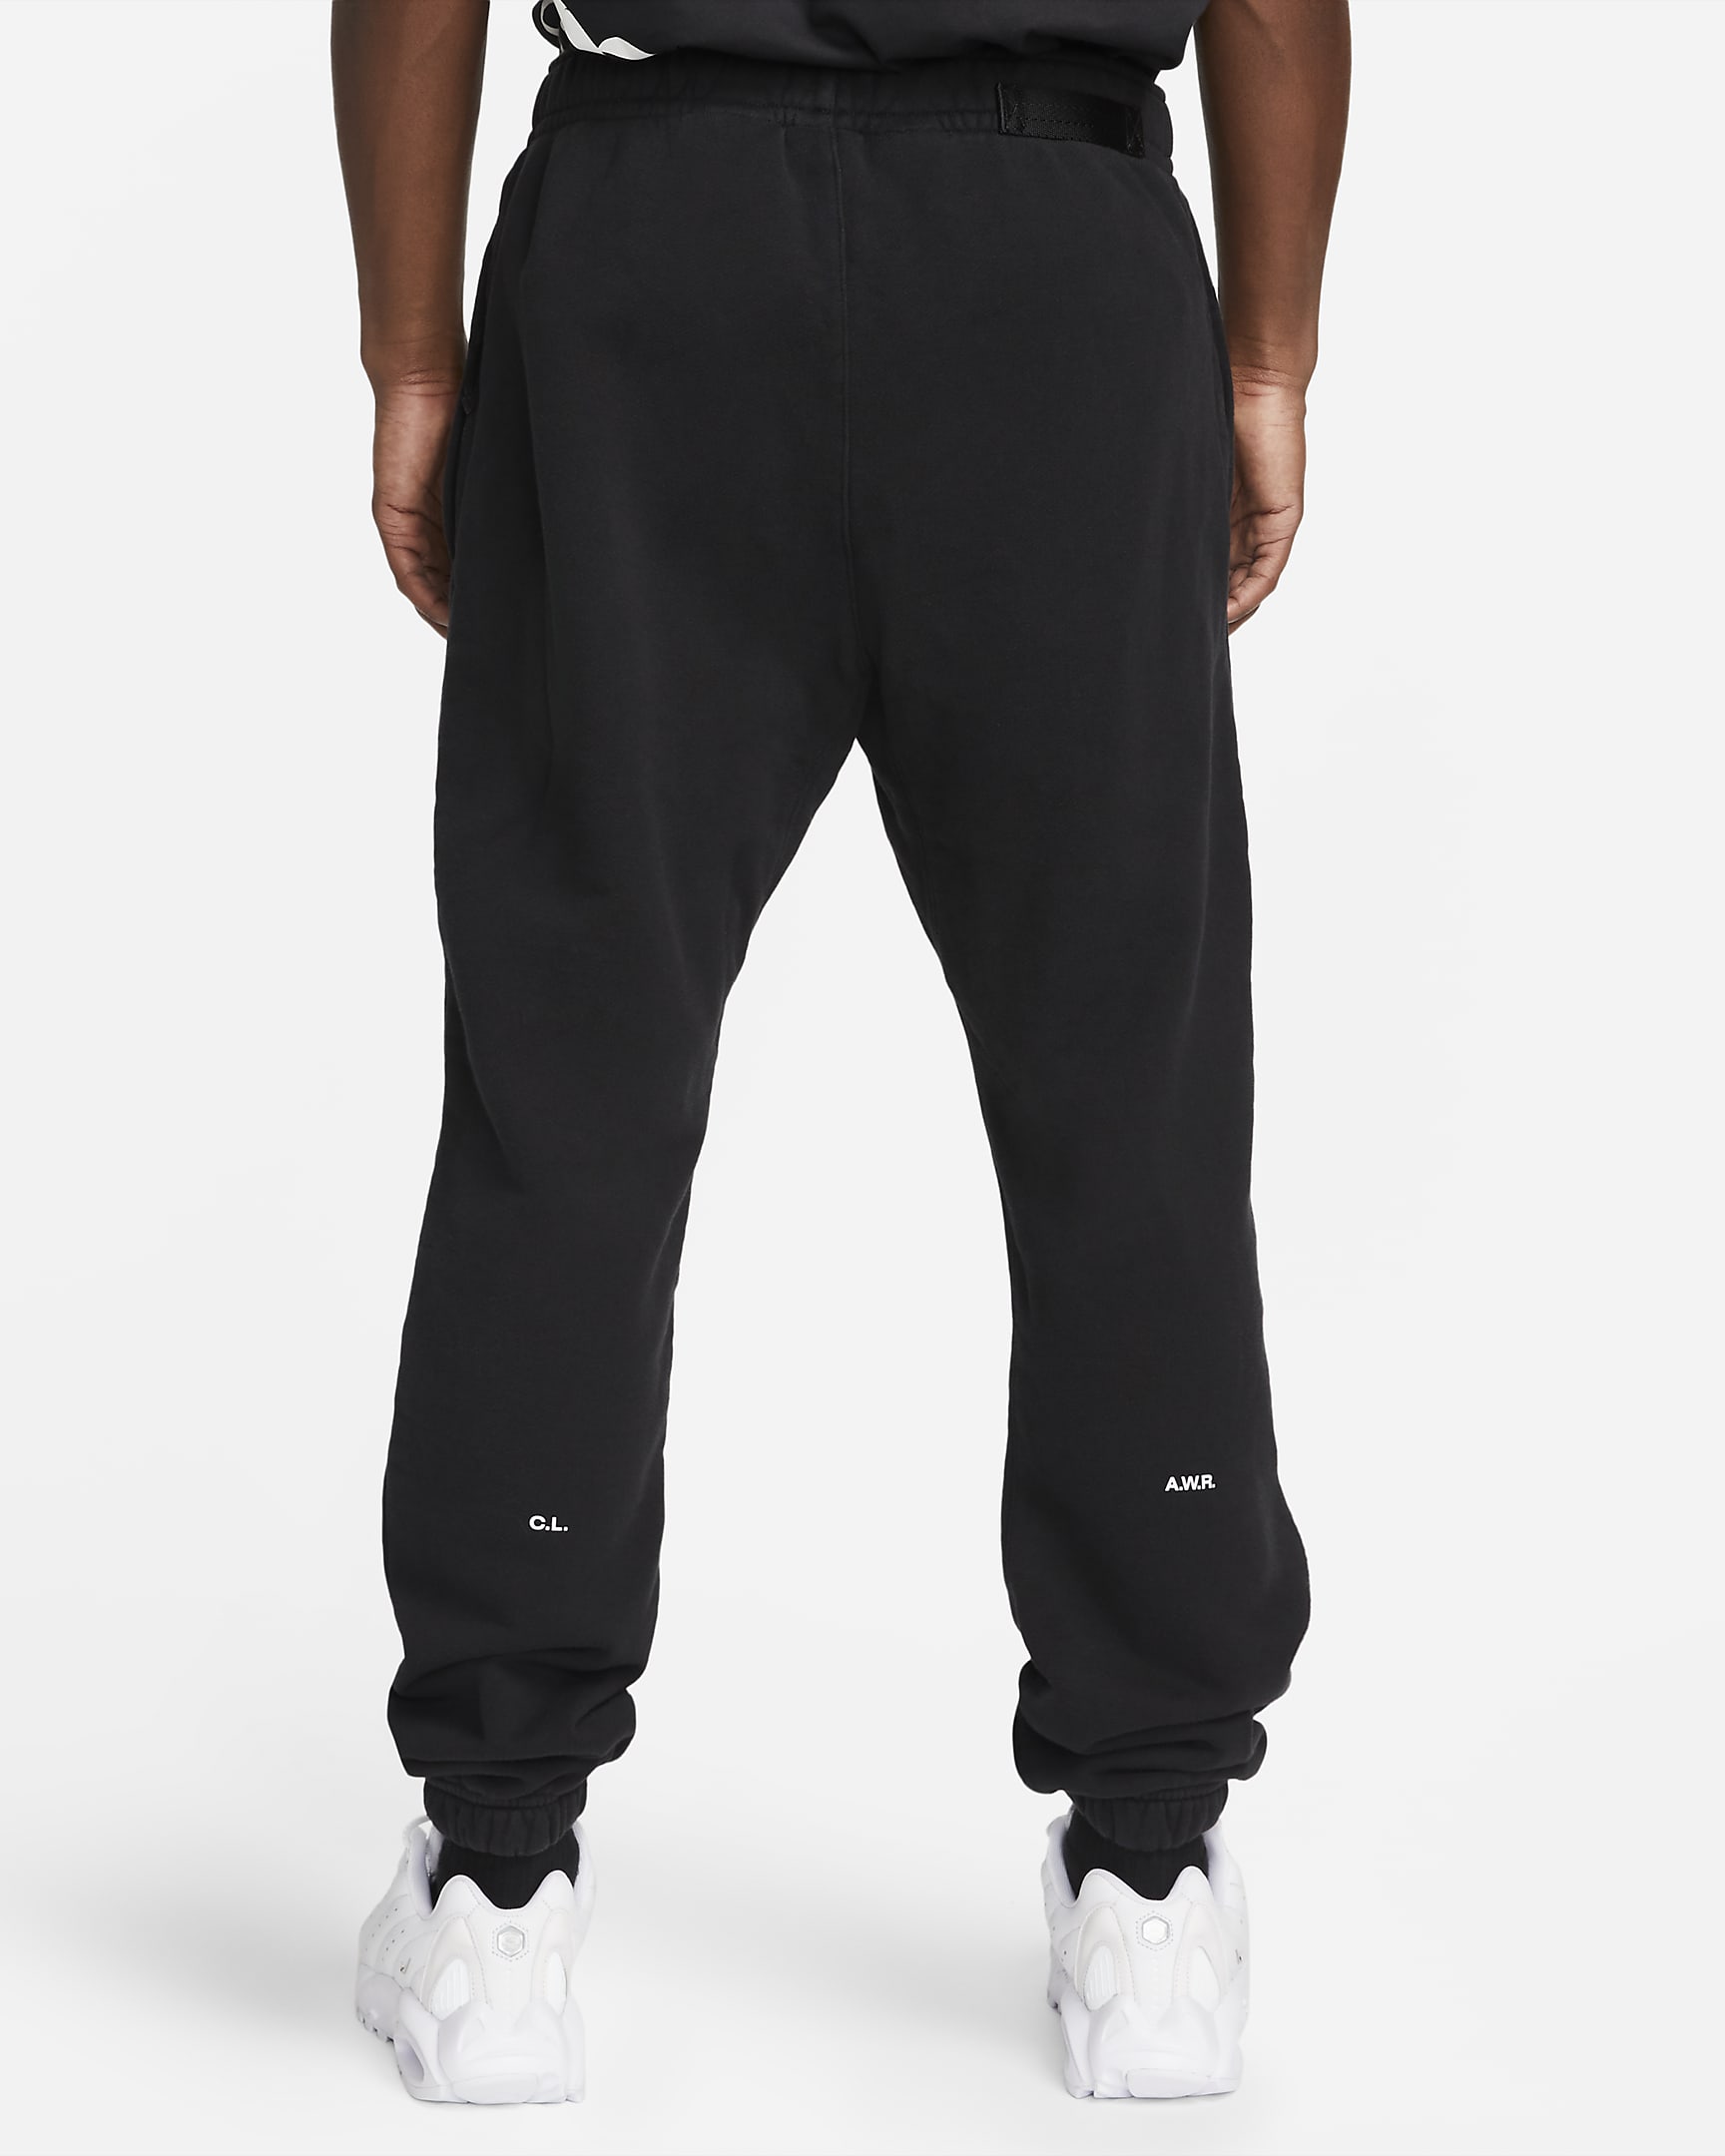 NOCTA Men's Fleece Basketball Pants. Nike JP